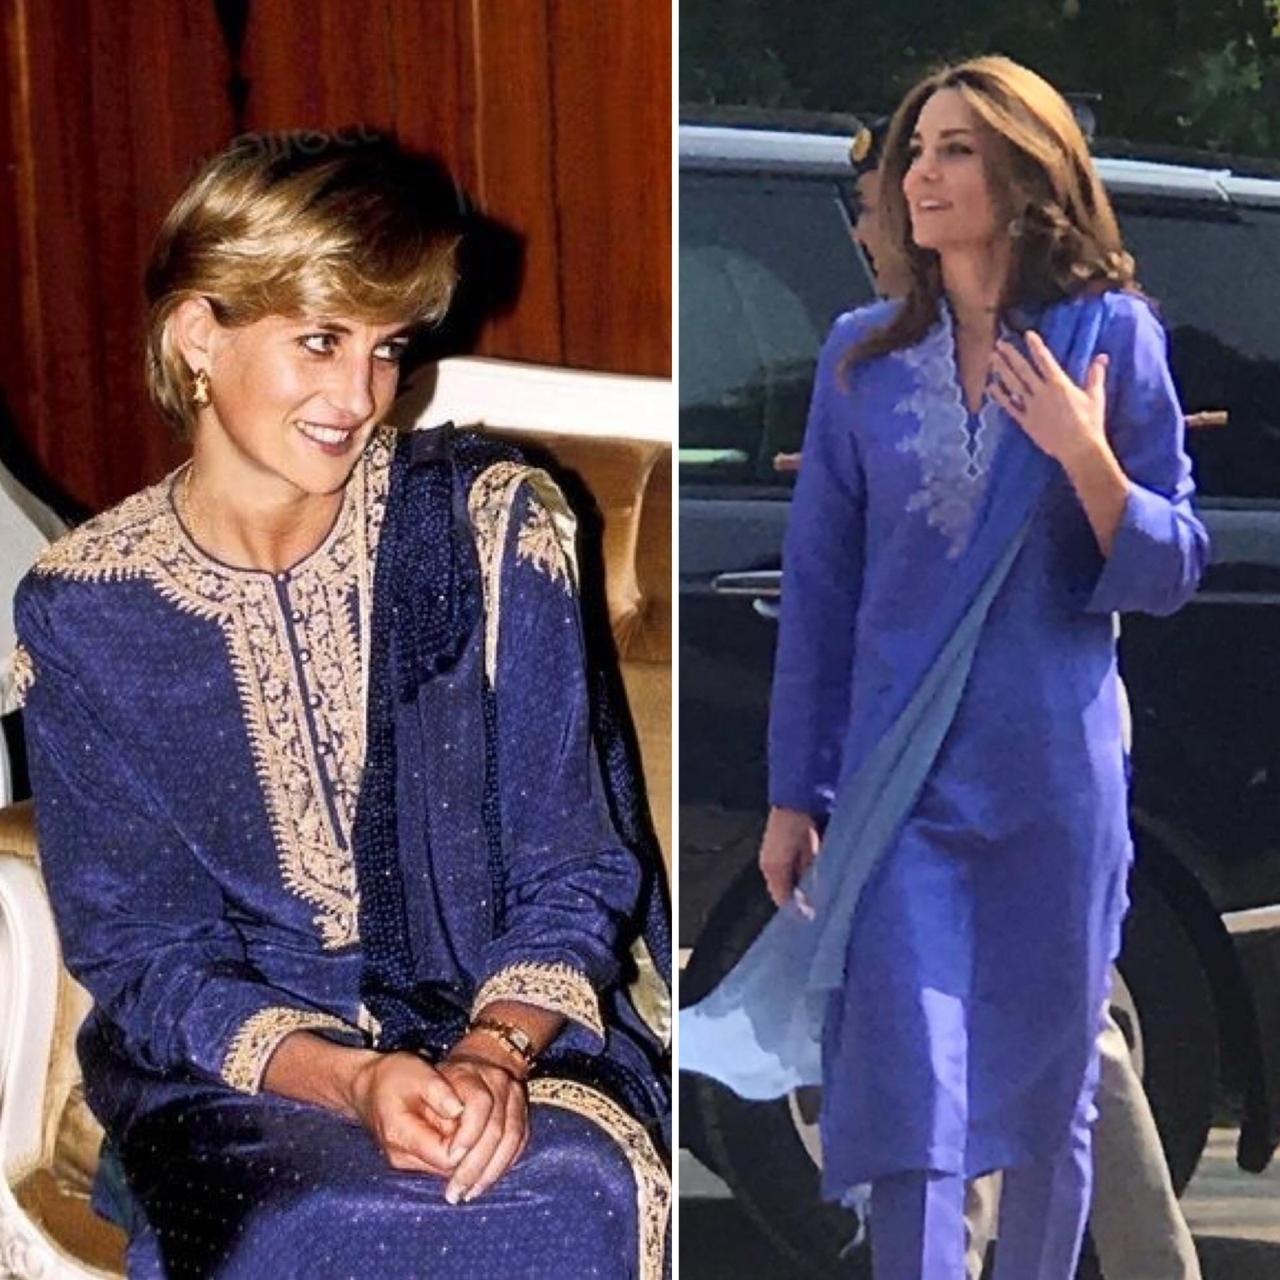 Kate Middleton channels Princess Diana in blue shalwar kameez